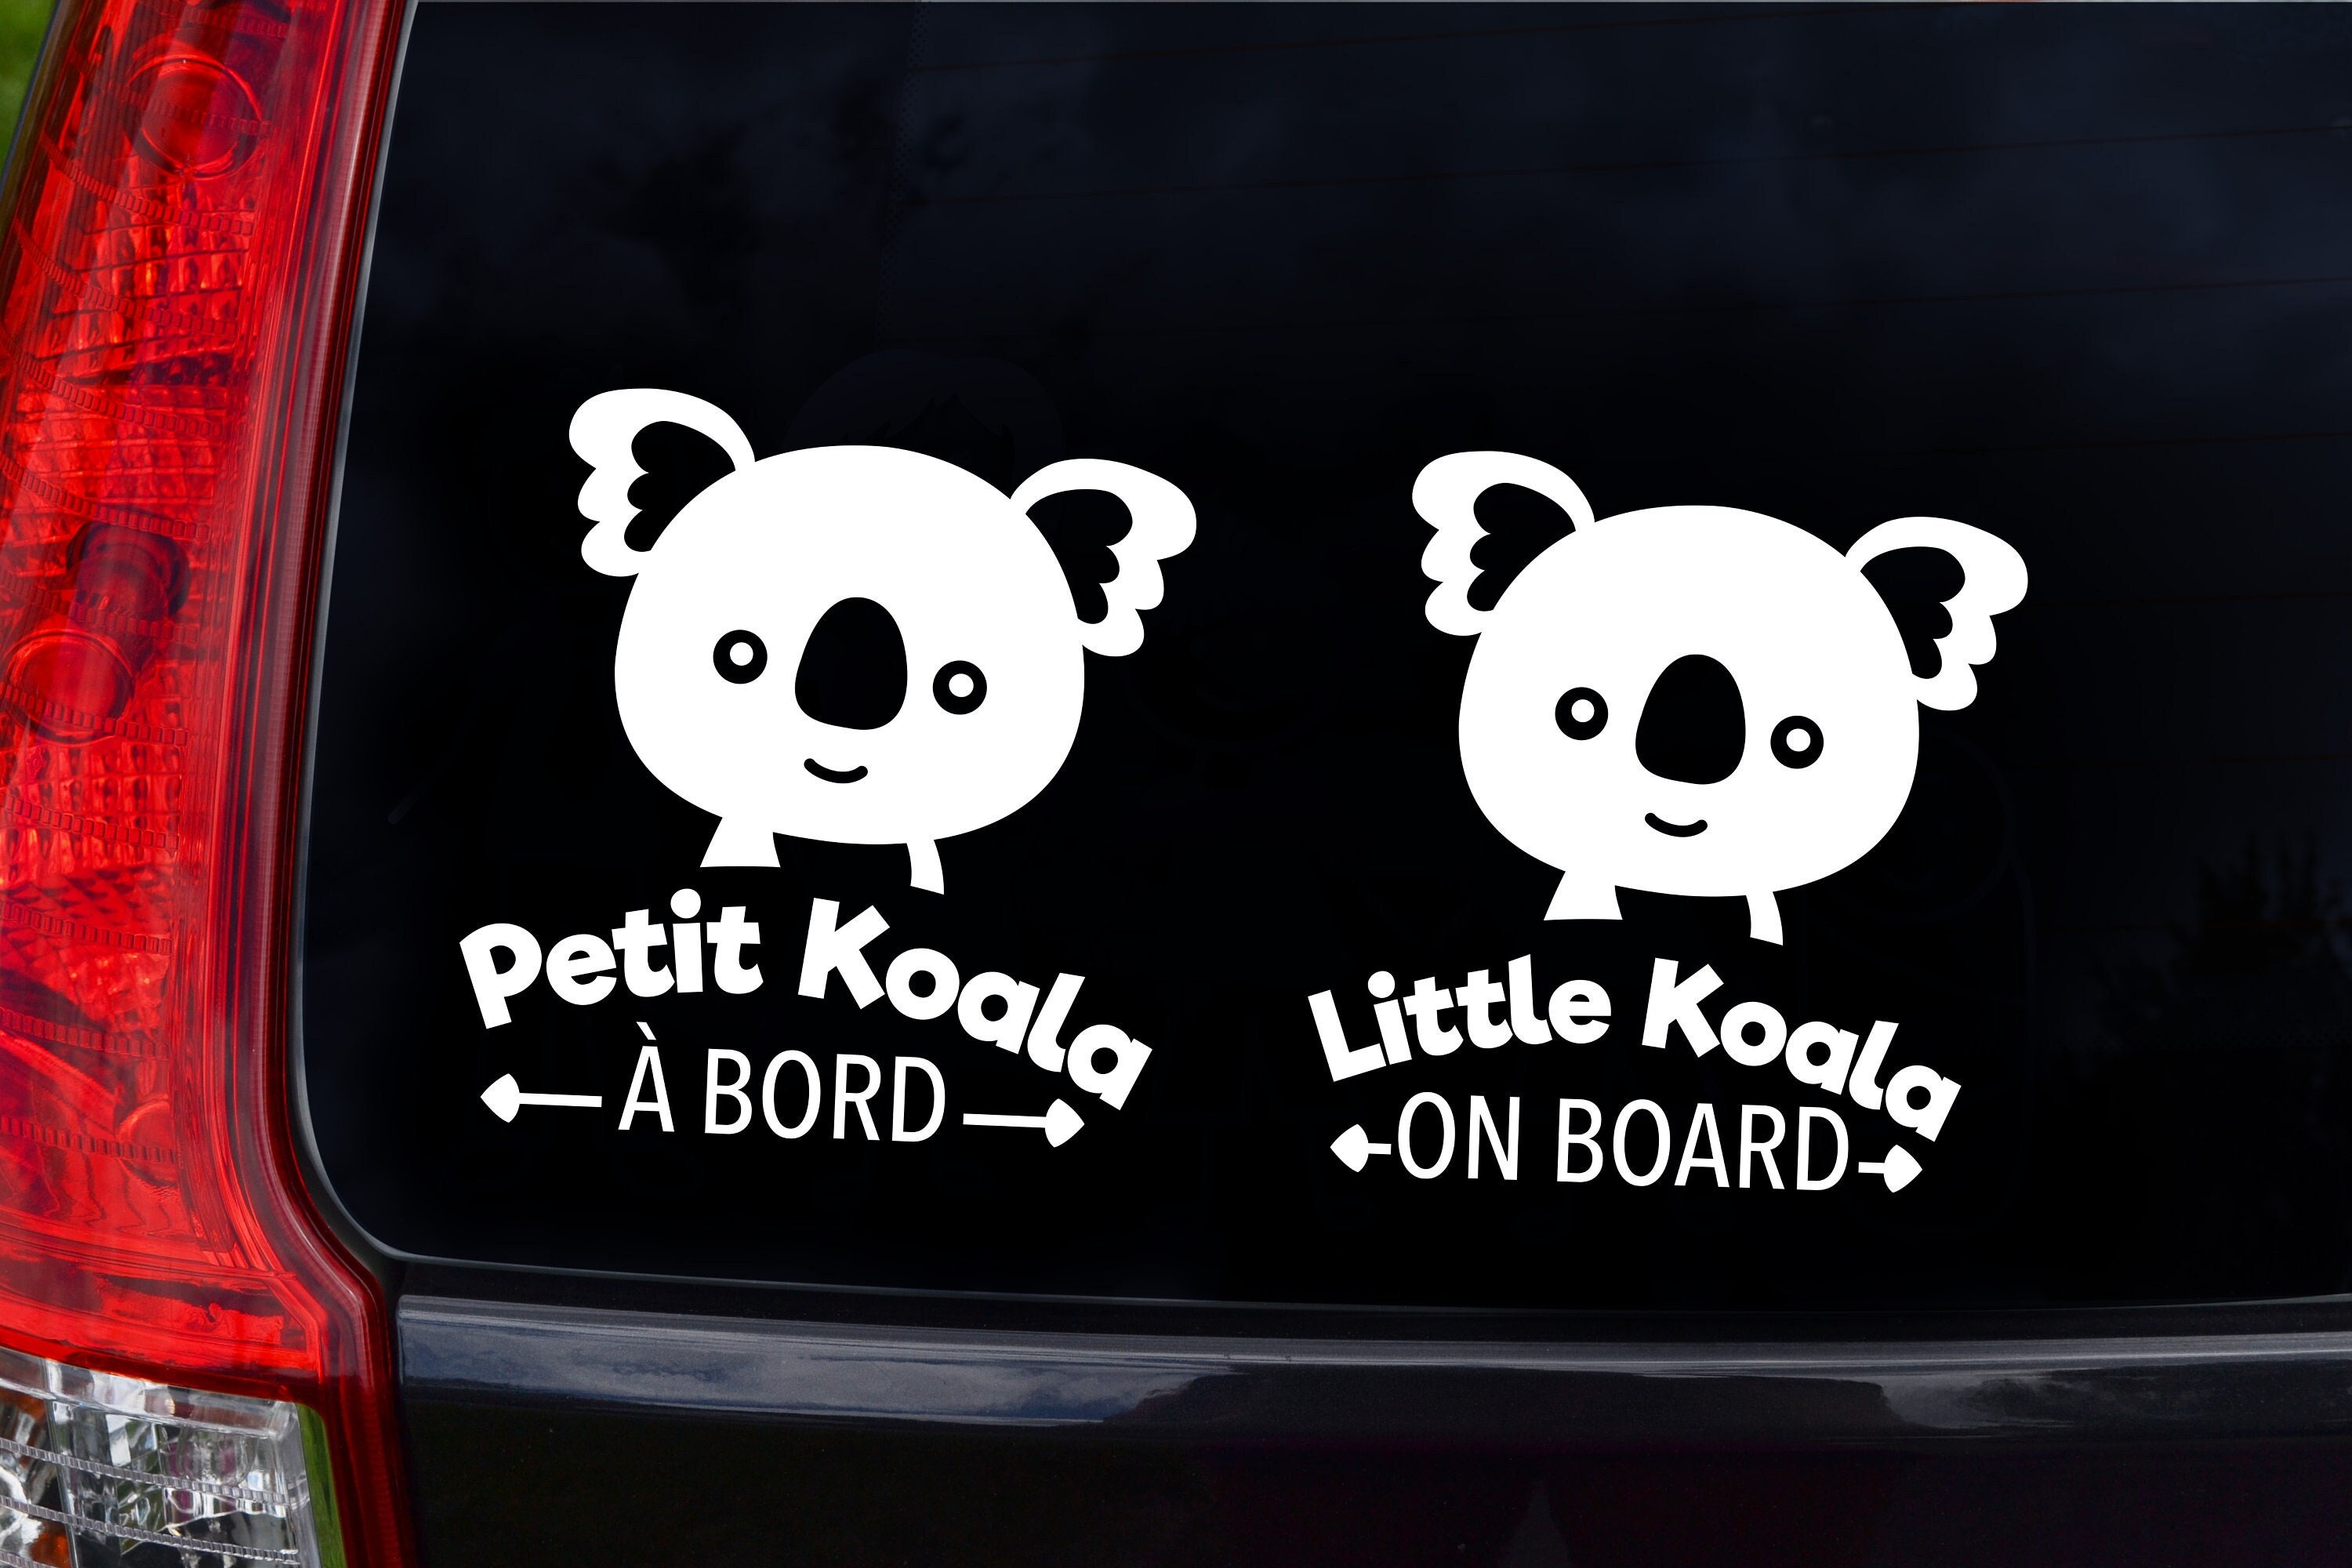 Pancarte voiture bébé à bord animal Koala avec ventouse sécurité